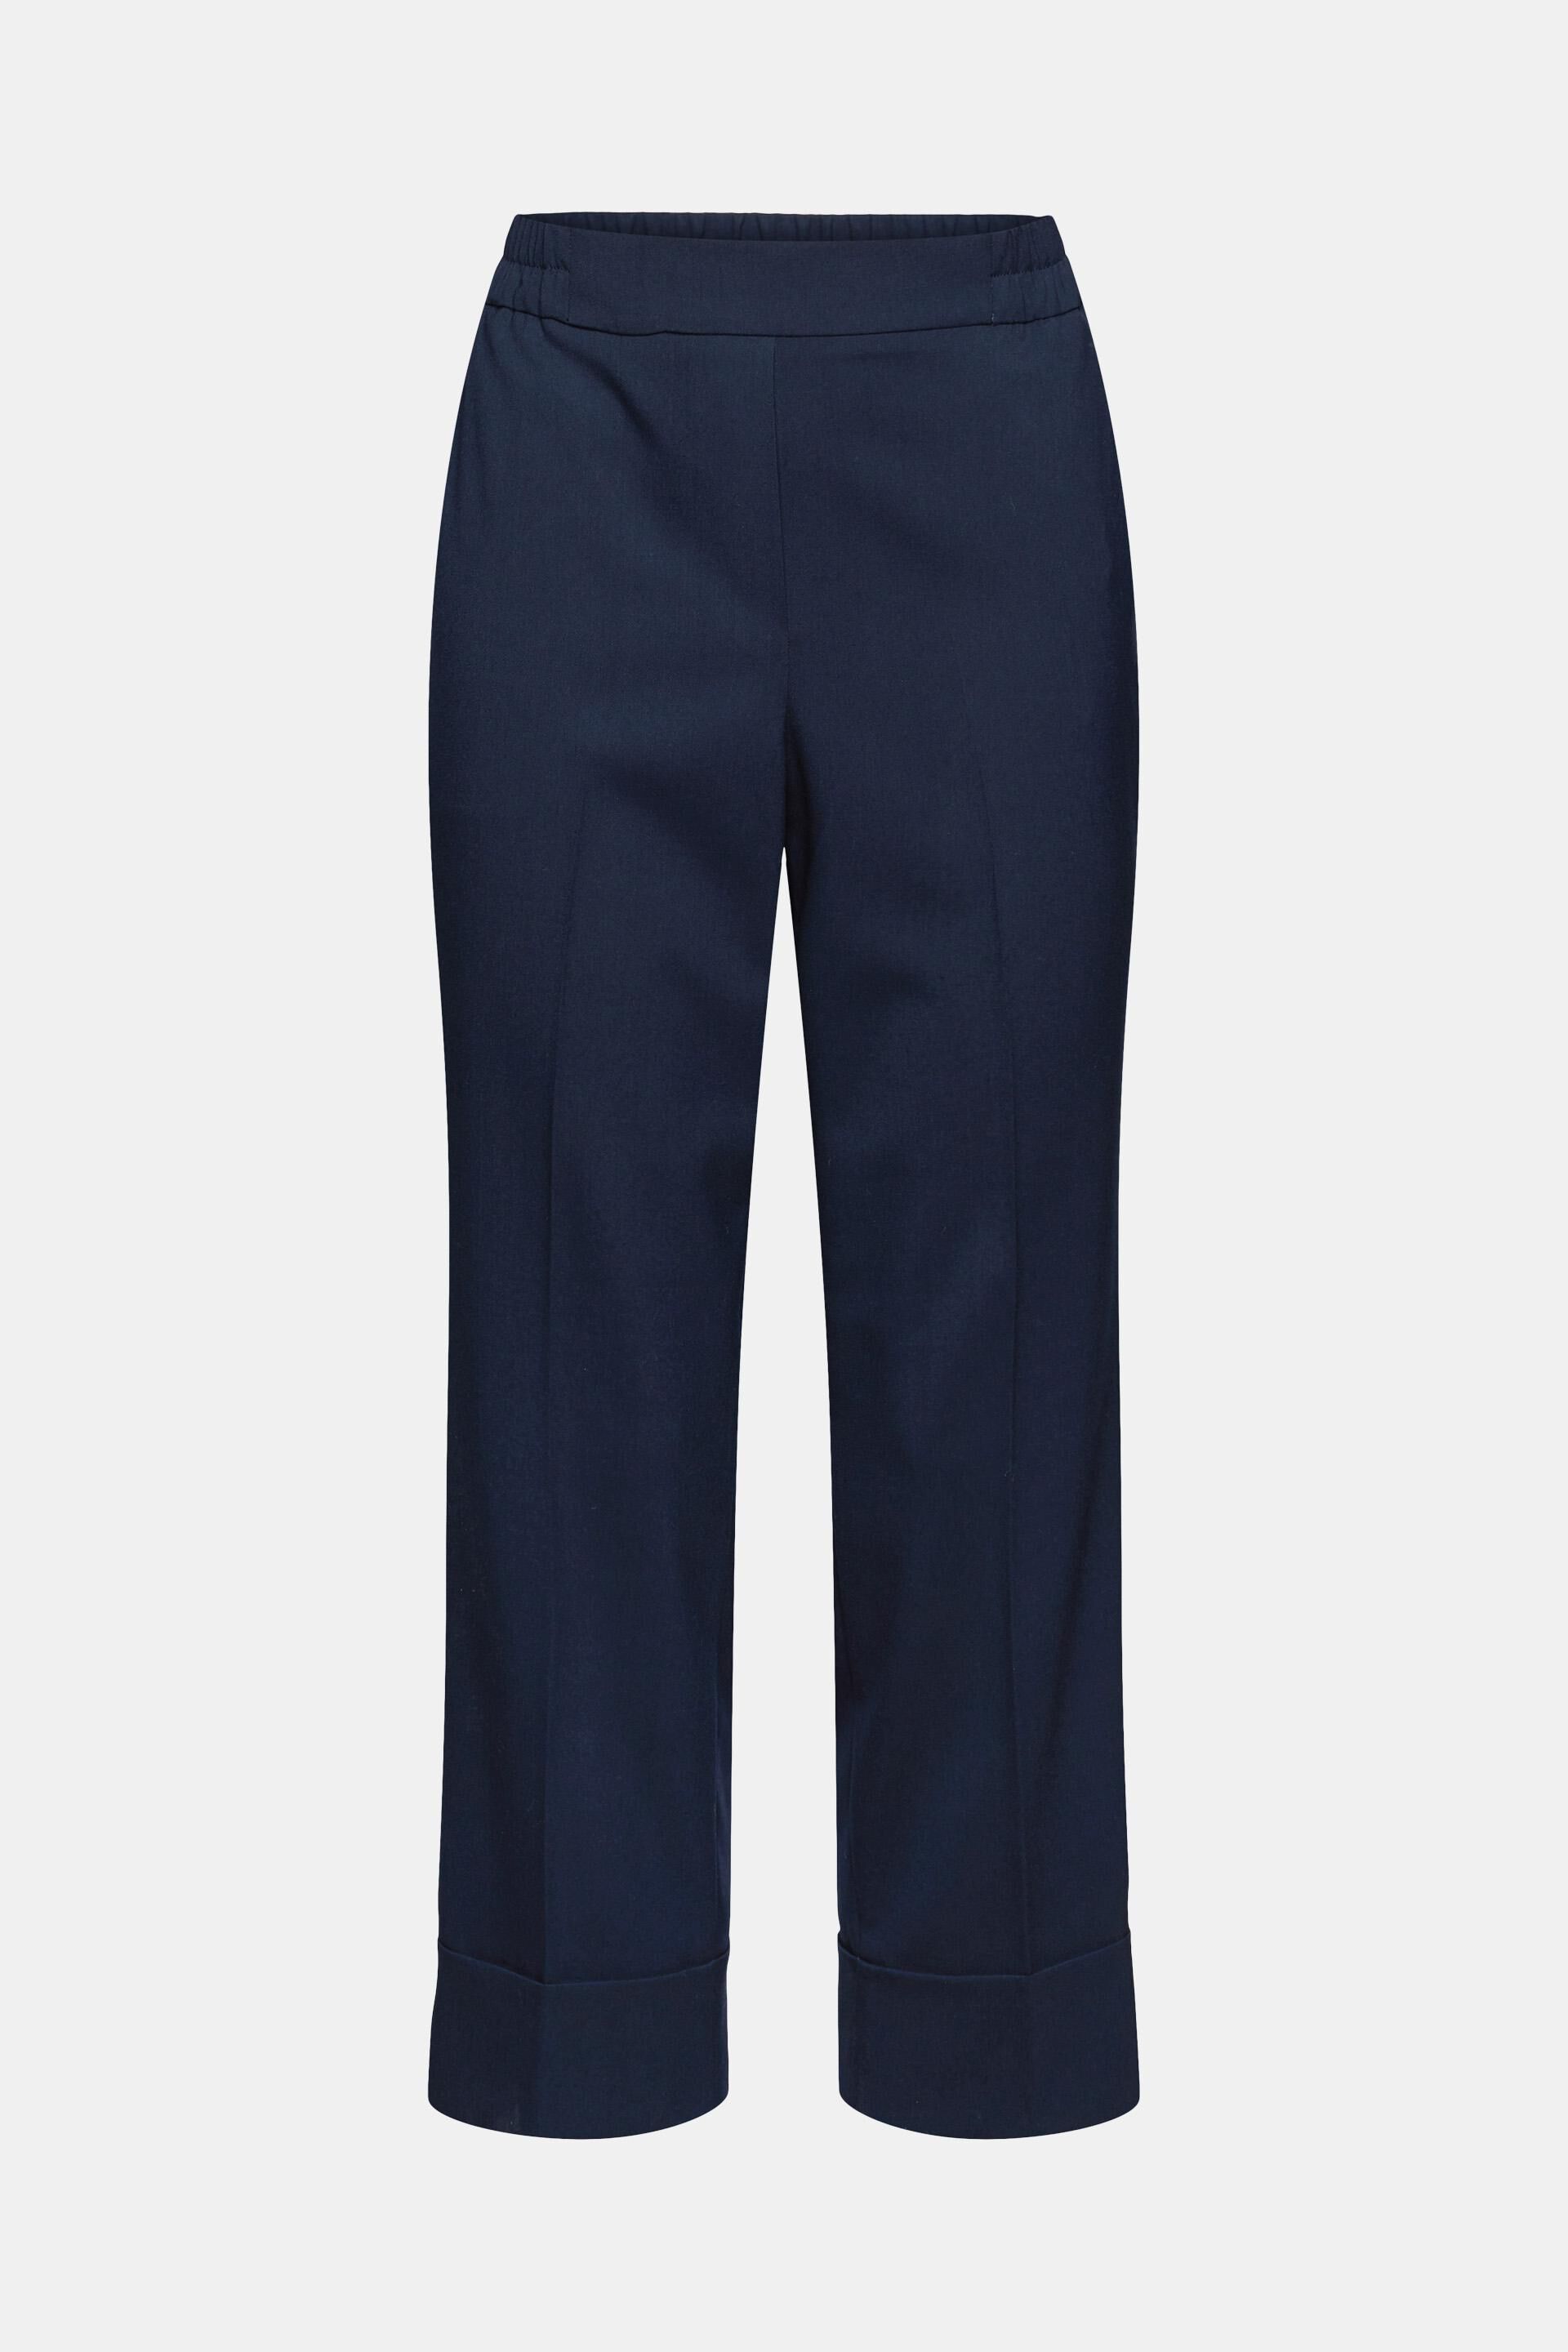 Esprit Spodnie z zak\u0142adkami ciemnoniebieski W stylu casual Moda Spodnie Spodnie z zakładkami 